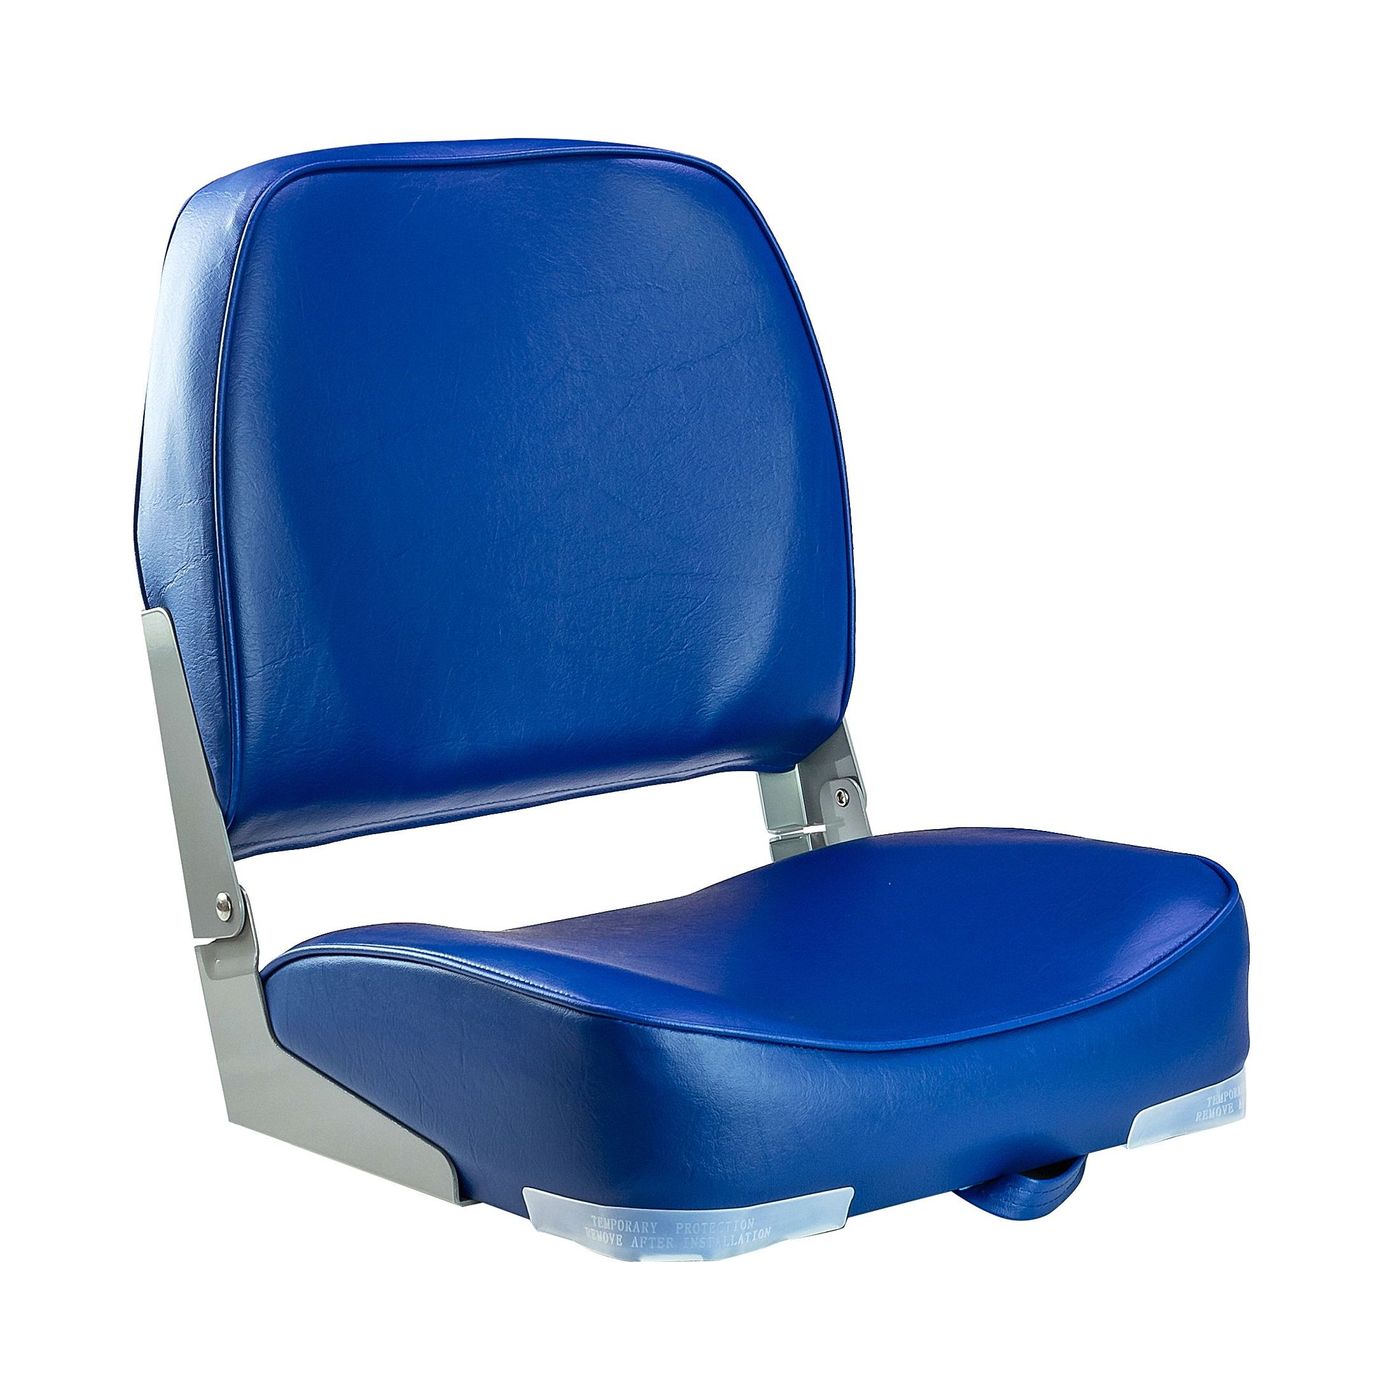 Кресло мягкое складное, обивка винил, цвет синий, Marine Rocket 75103B-MR кресло шезлонг складное со съемным матрасом и декоративной подушкой haushalt hhk6 bl синий